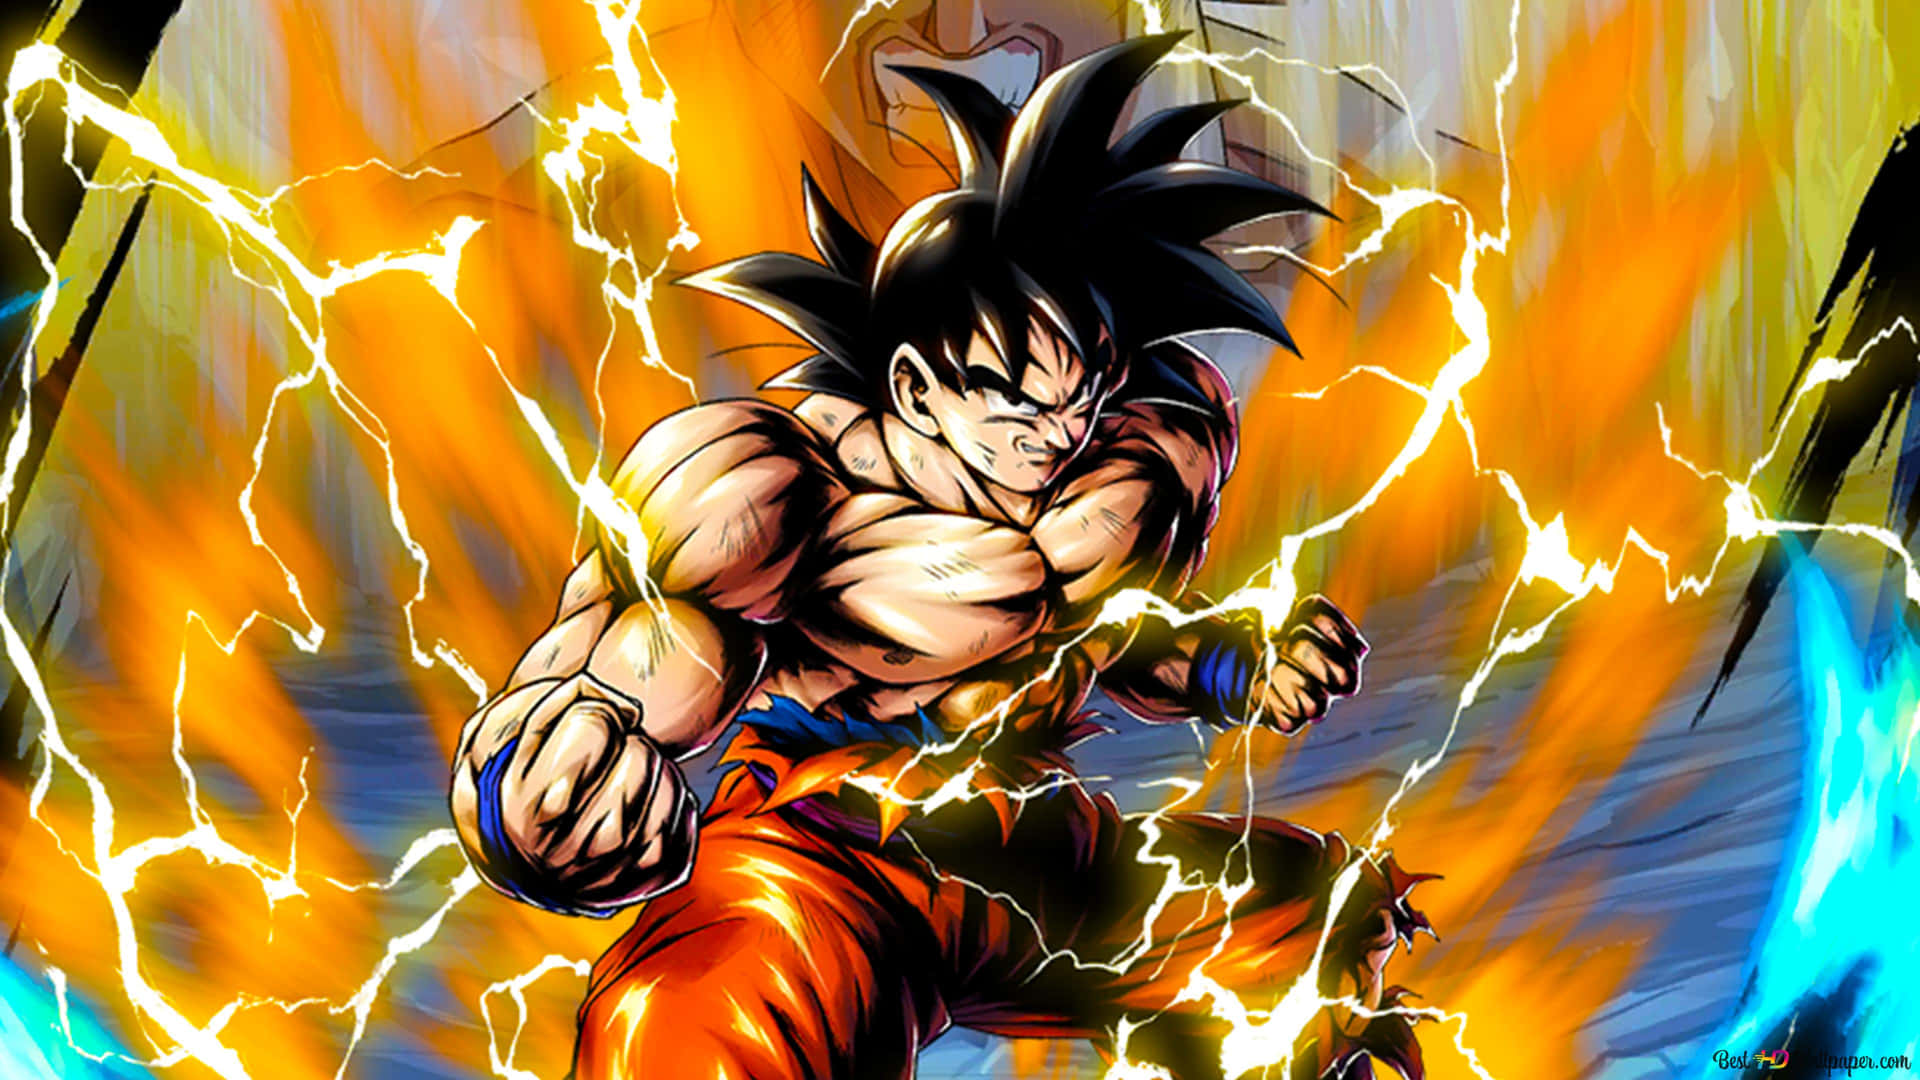 Imagemde Goku Com Energia De Dragon Ball Z